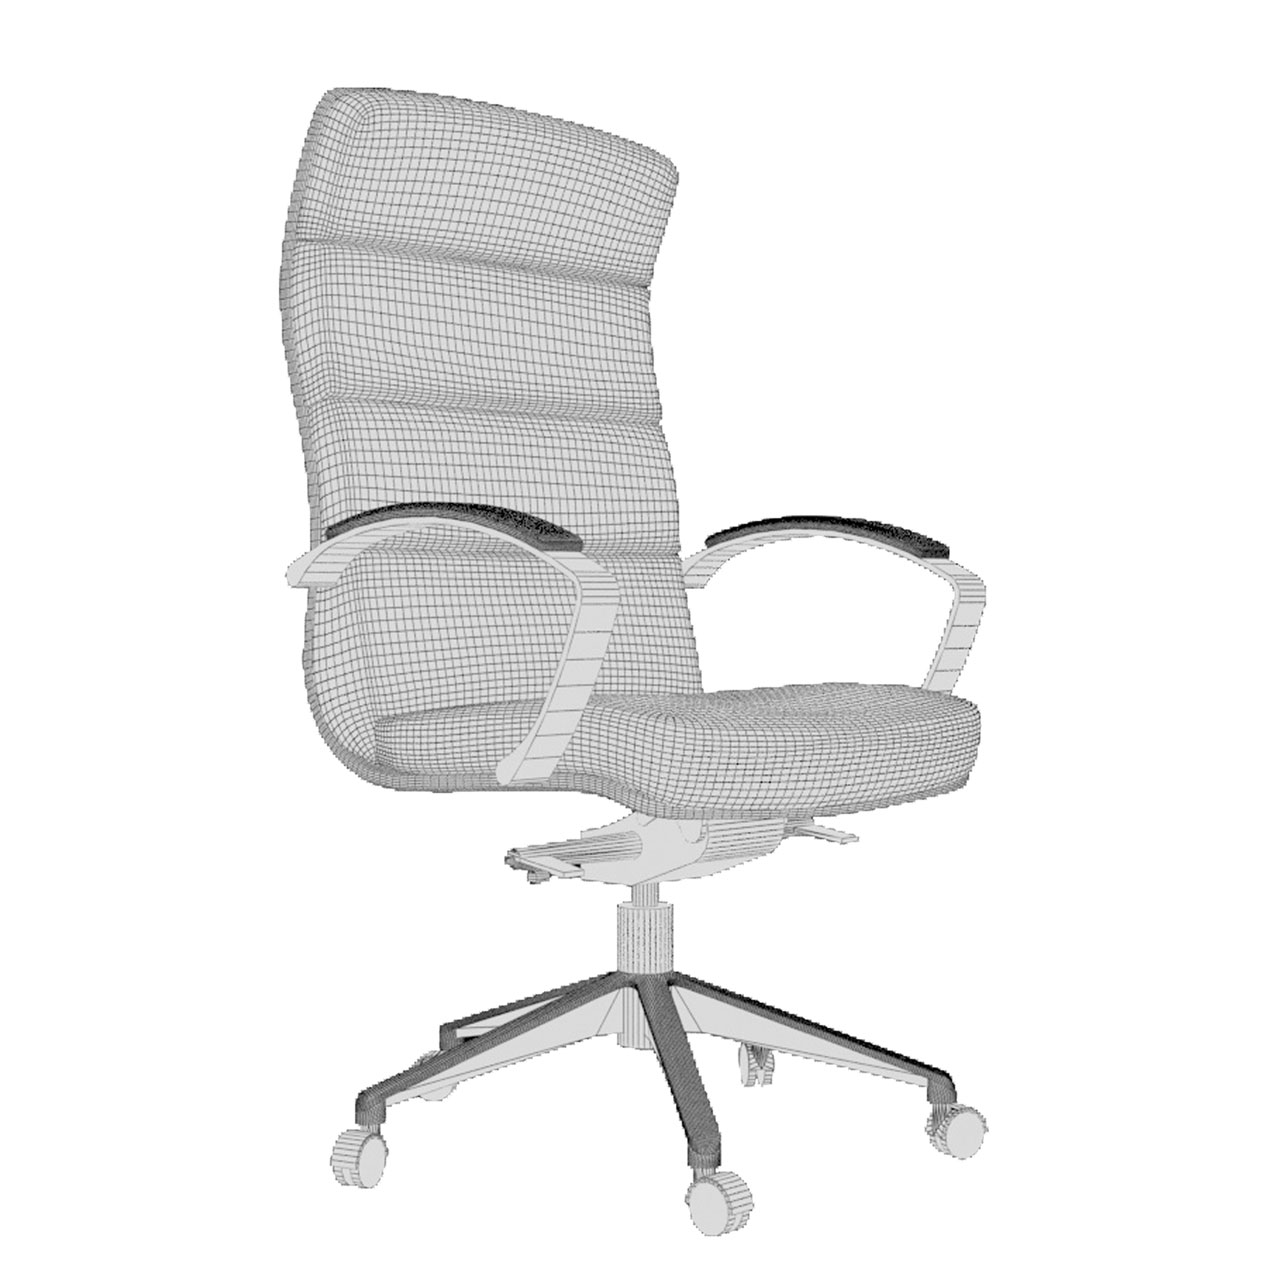 Превью 3D-модели офисного кресла LAS Scena